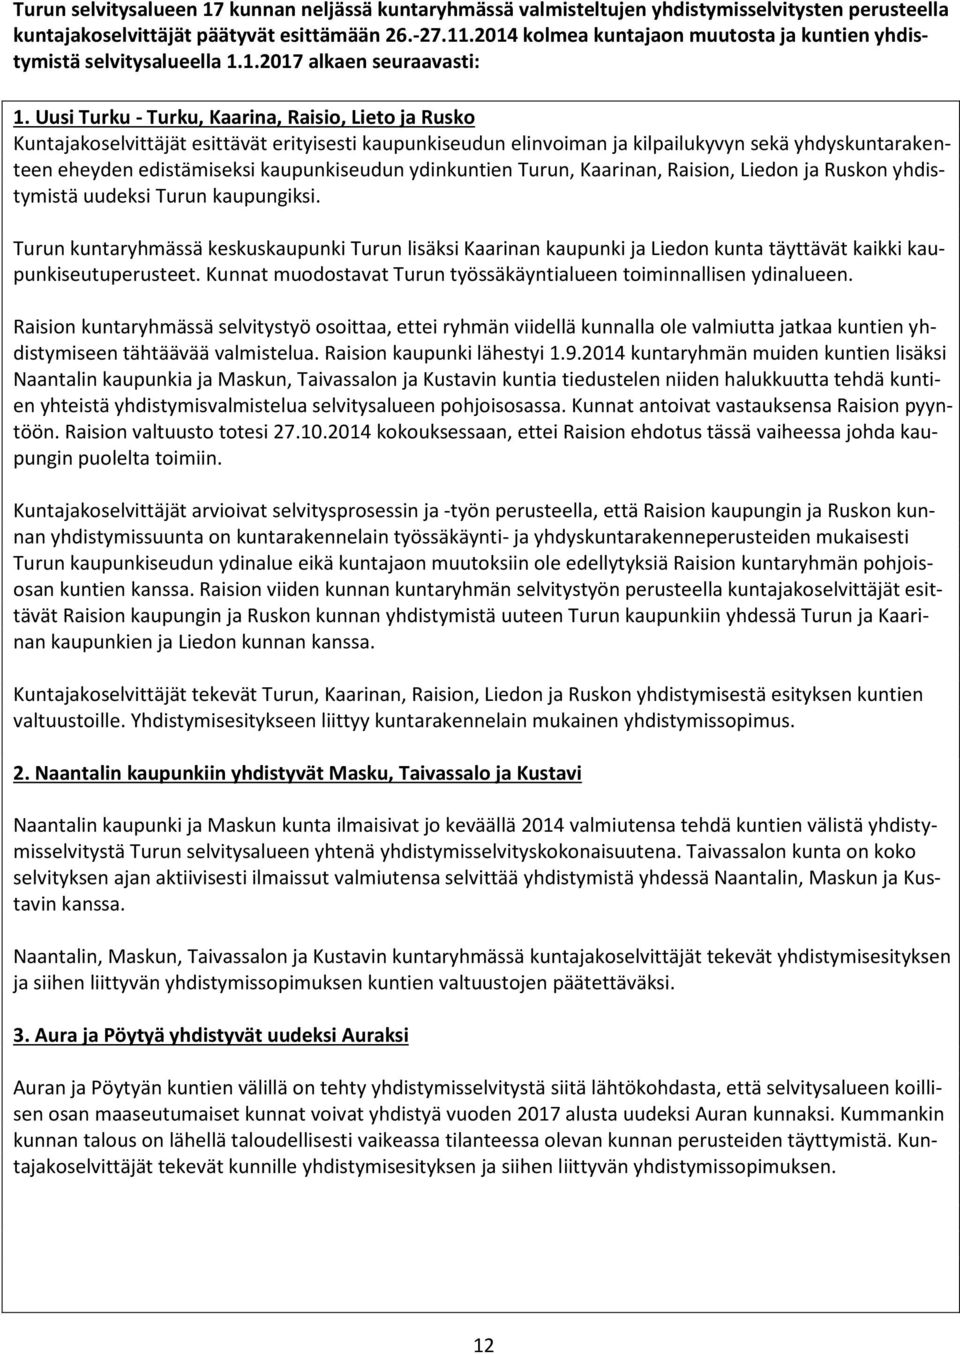 Uusi Turku - Turku, Kaarina, Raisio, Lieto ja Rusko Kuntajakoselvittäjät esittävät erityisesti kaupunkiseudun elinvoiman ja kilpailukyvyn sekä yhdyskuntarakenteen eheyden edistämiseksi kaupunkiseudun